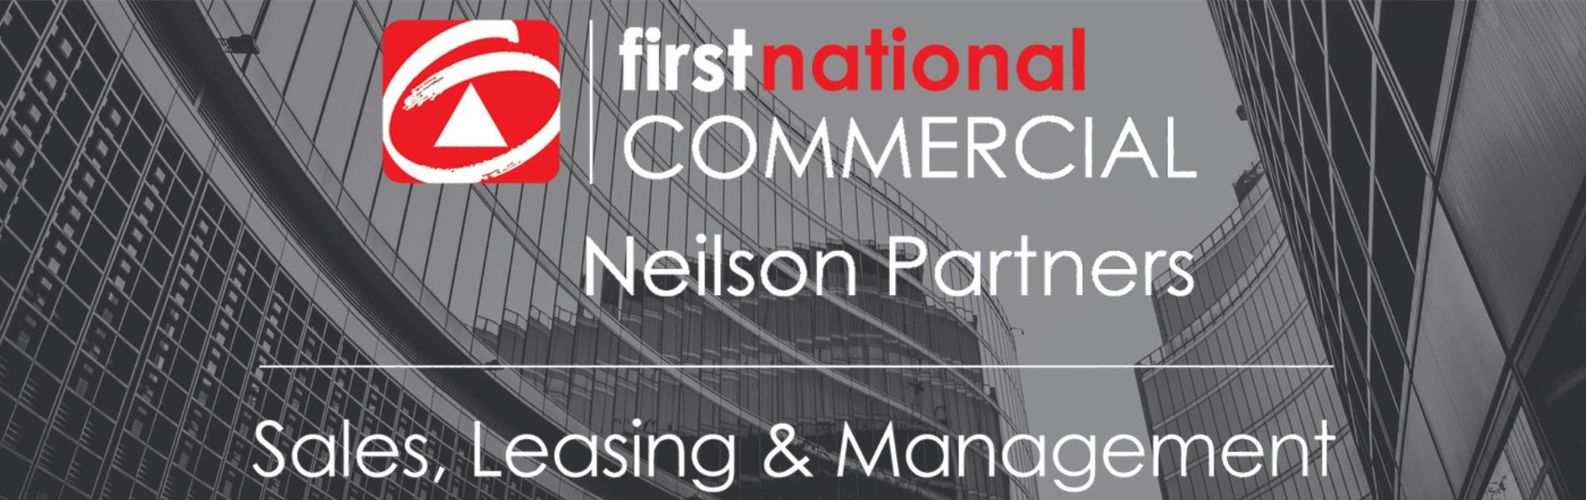 Neilson partners commercial banner